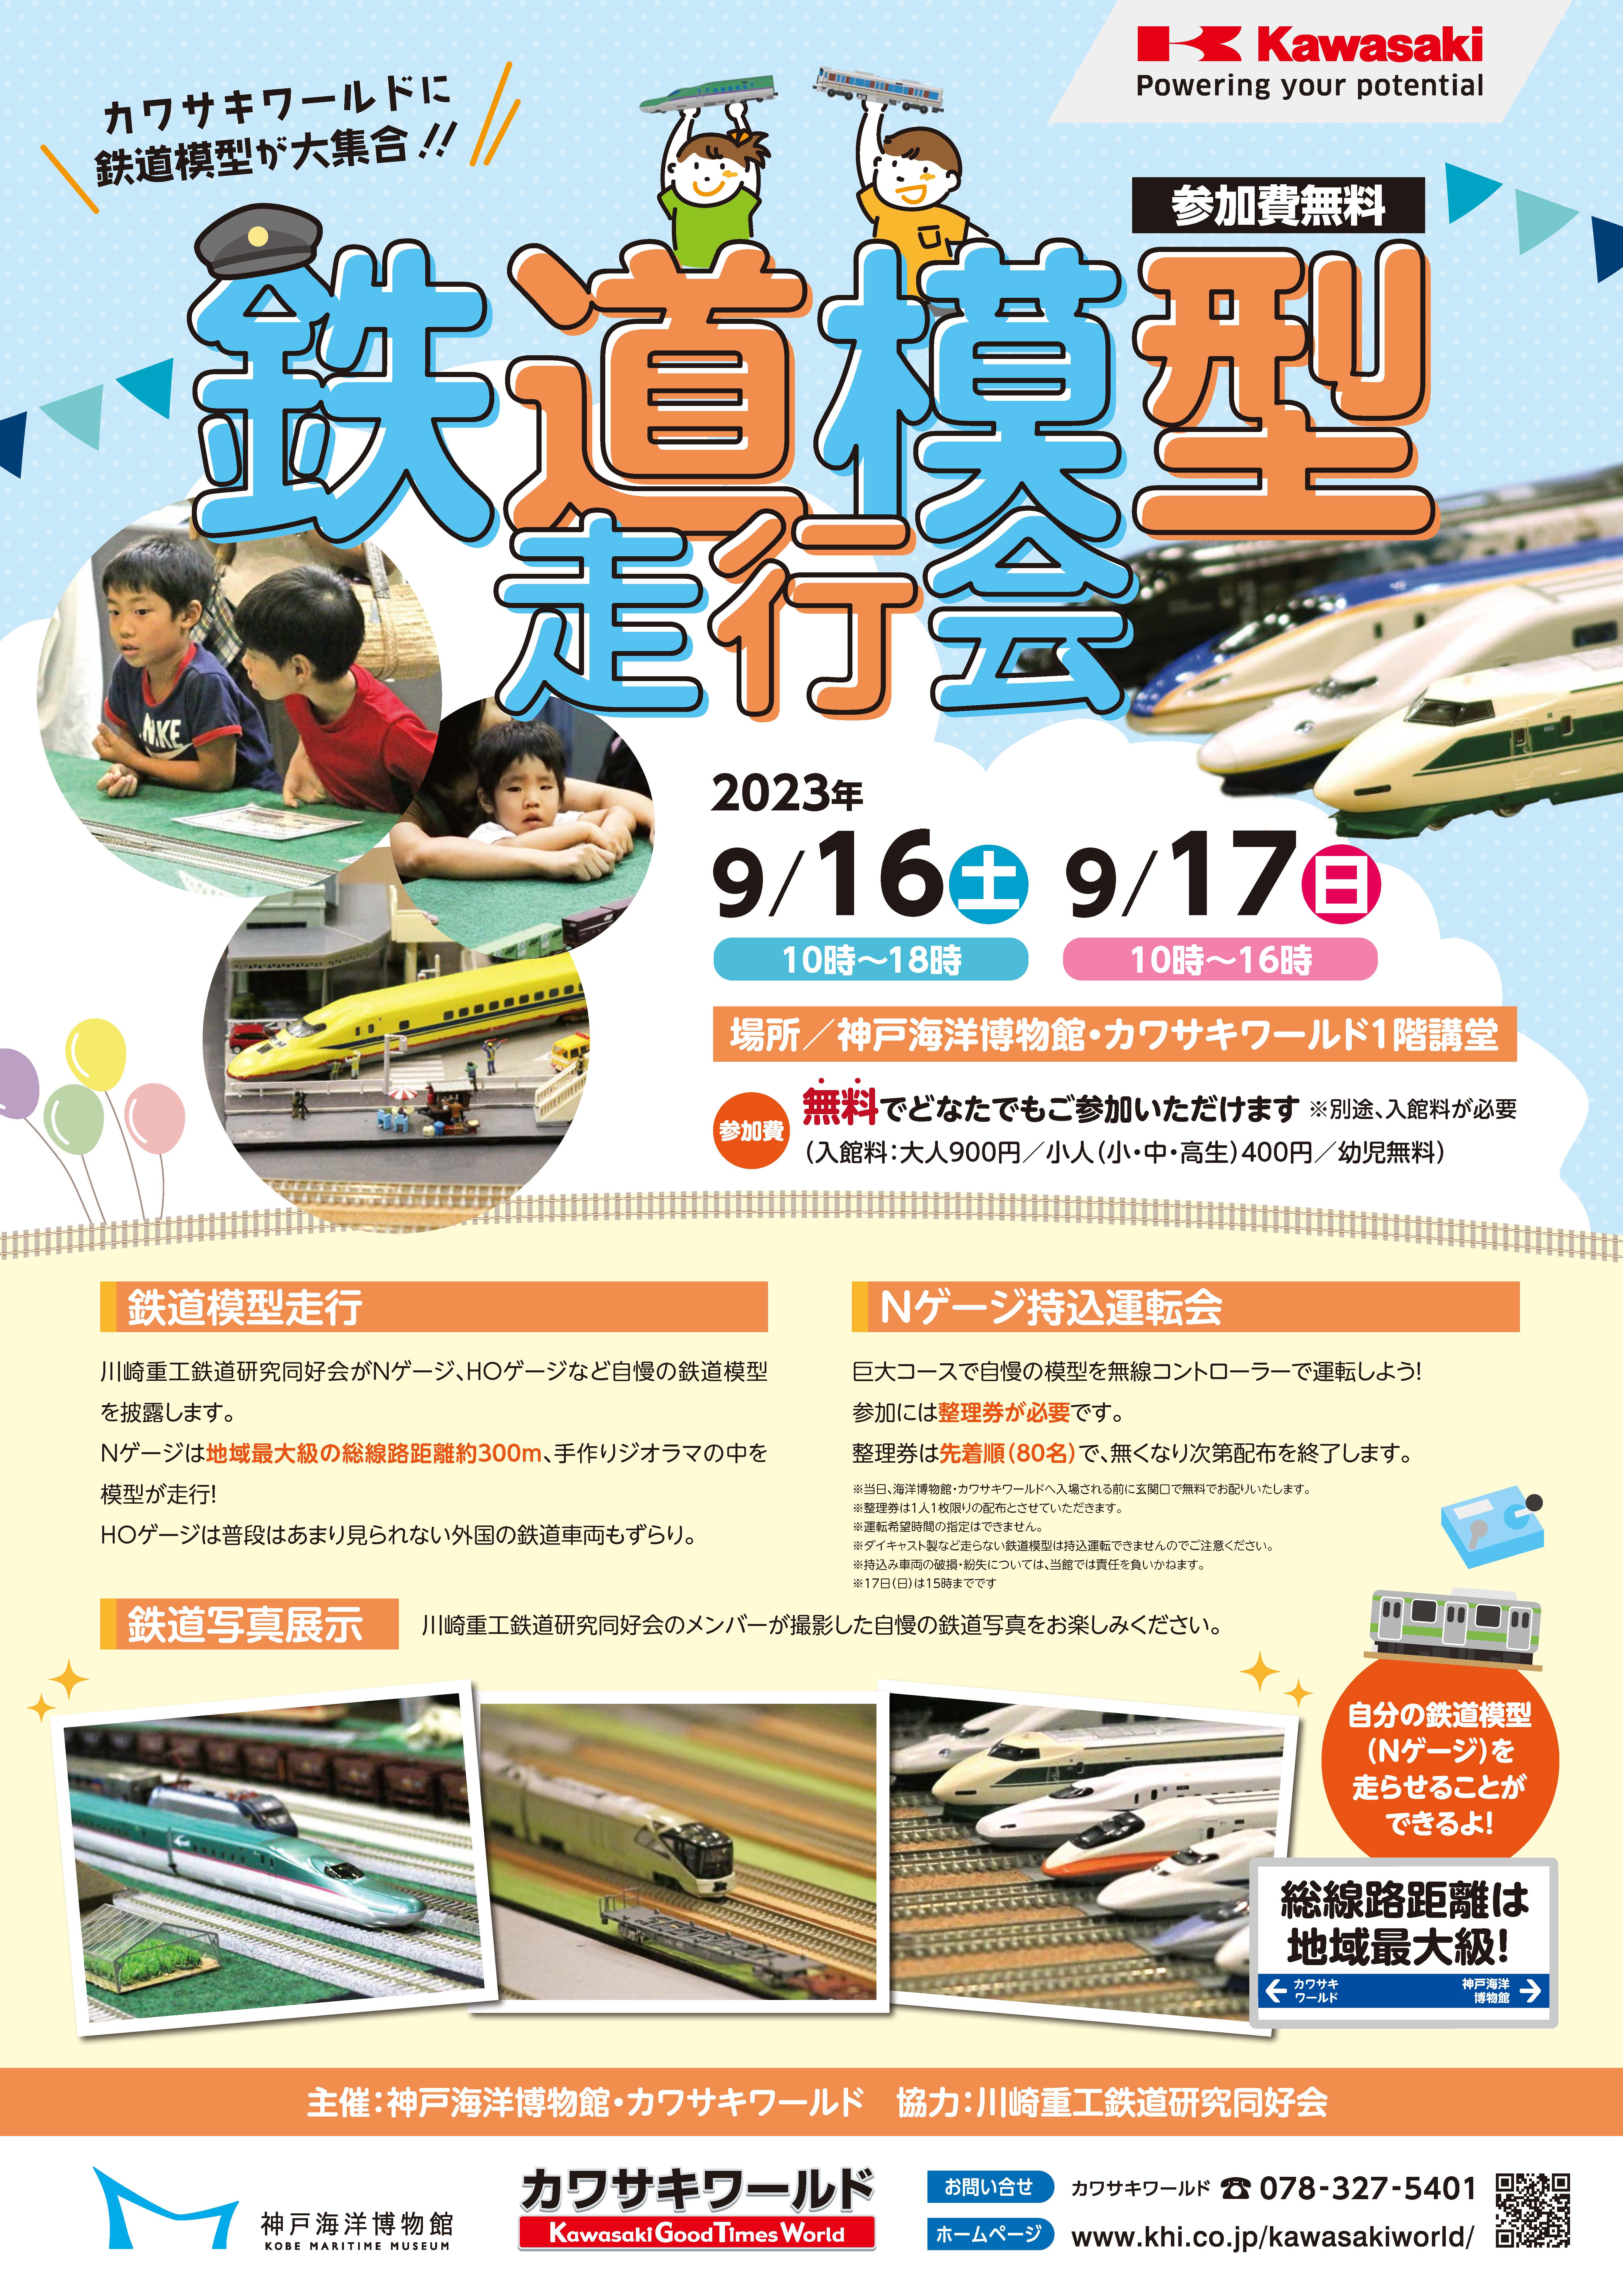 鉄道模型走行会（2023年9月16日・17日）」開催のお知らせ / カワサキ